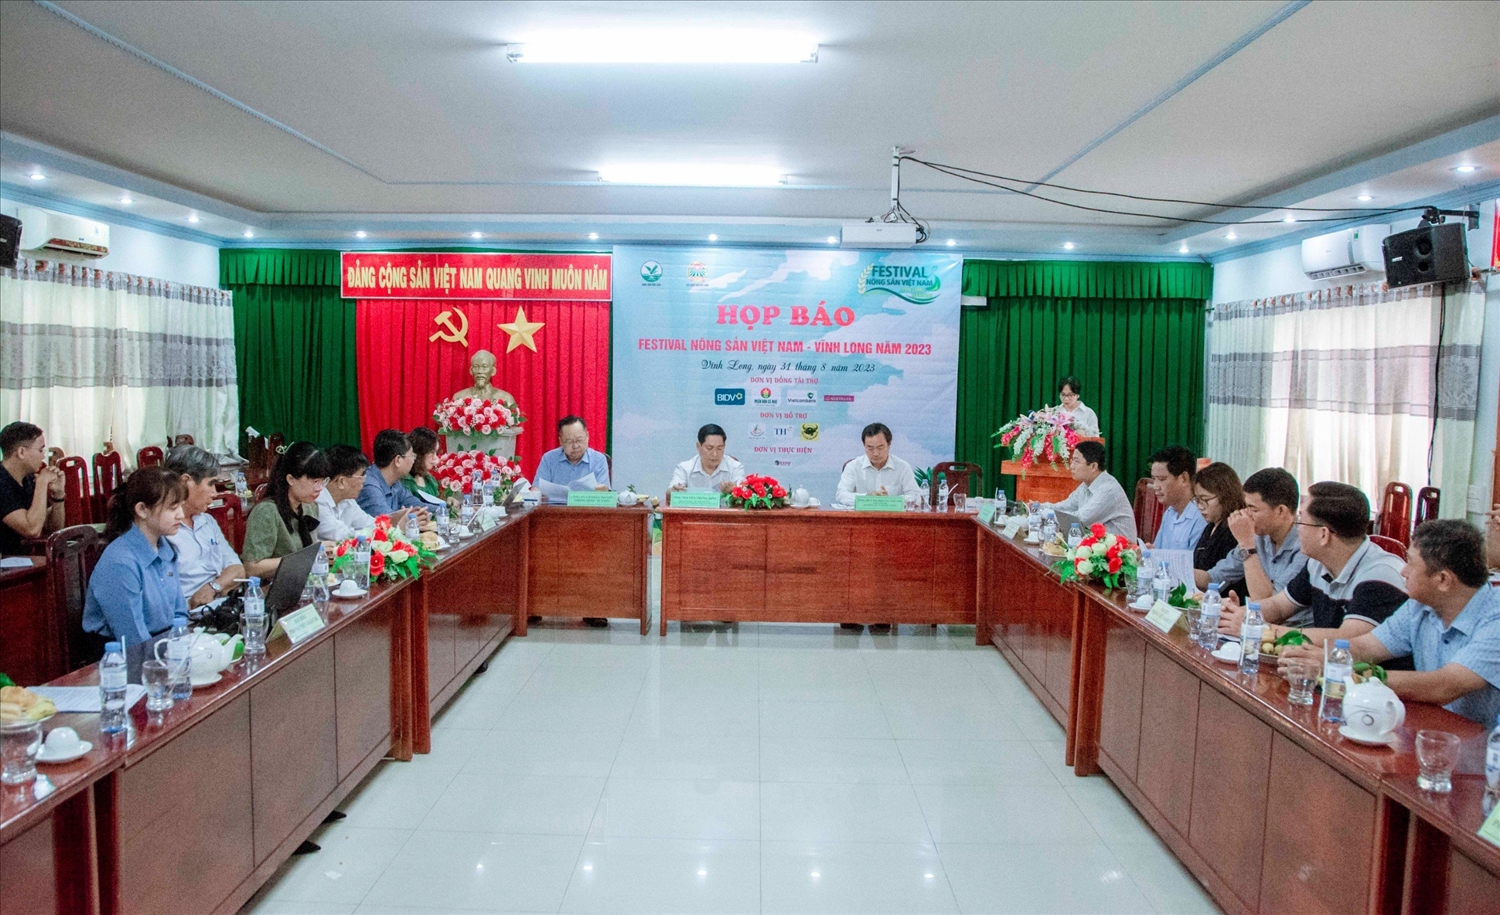 Sẽ có 60 gian hàng trưng bày các sản phẩm OCOP, sản phẩm công nghiệp nông thôn tiêu biểu từ các tỉnh, thành phố trên cả nước trưng bày tạiFestival Nông sản Việt Nam - Vĩnh Long năm 2023